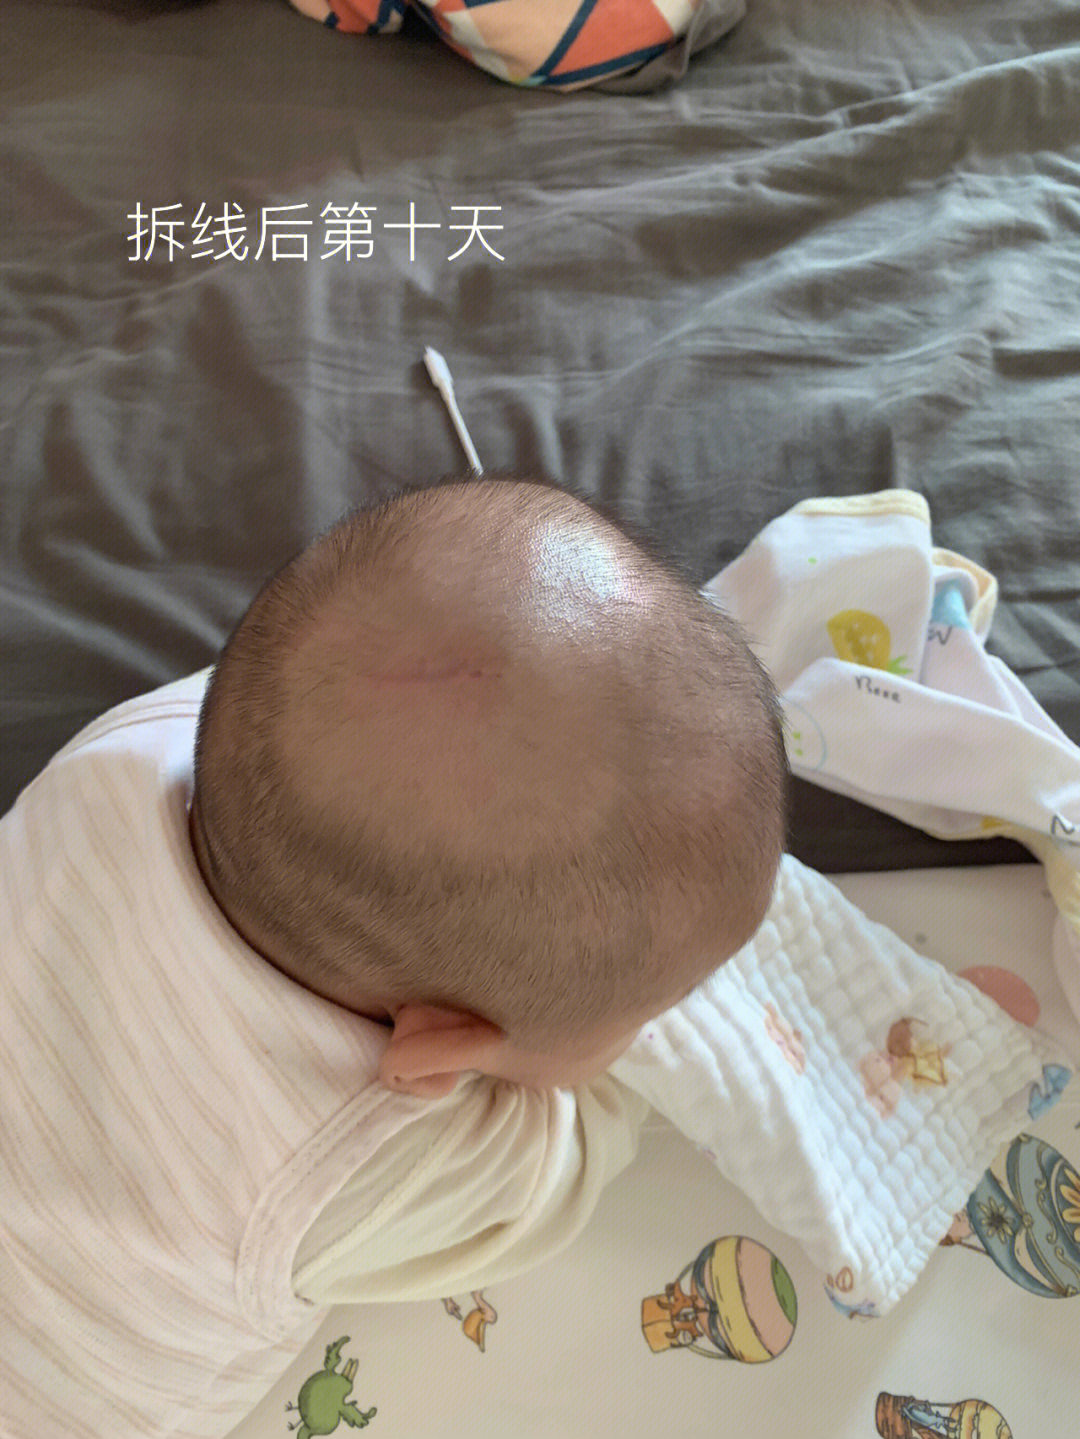 广东省内皮脂腺痣切除手术经验分享